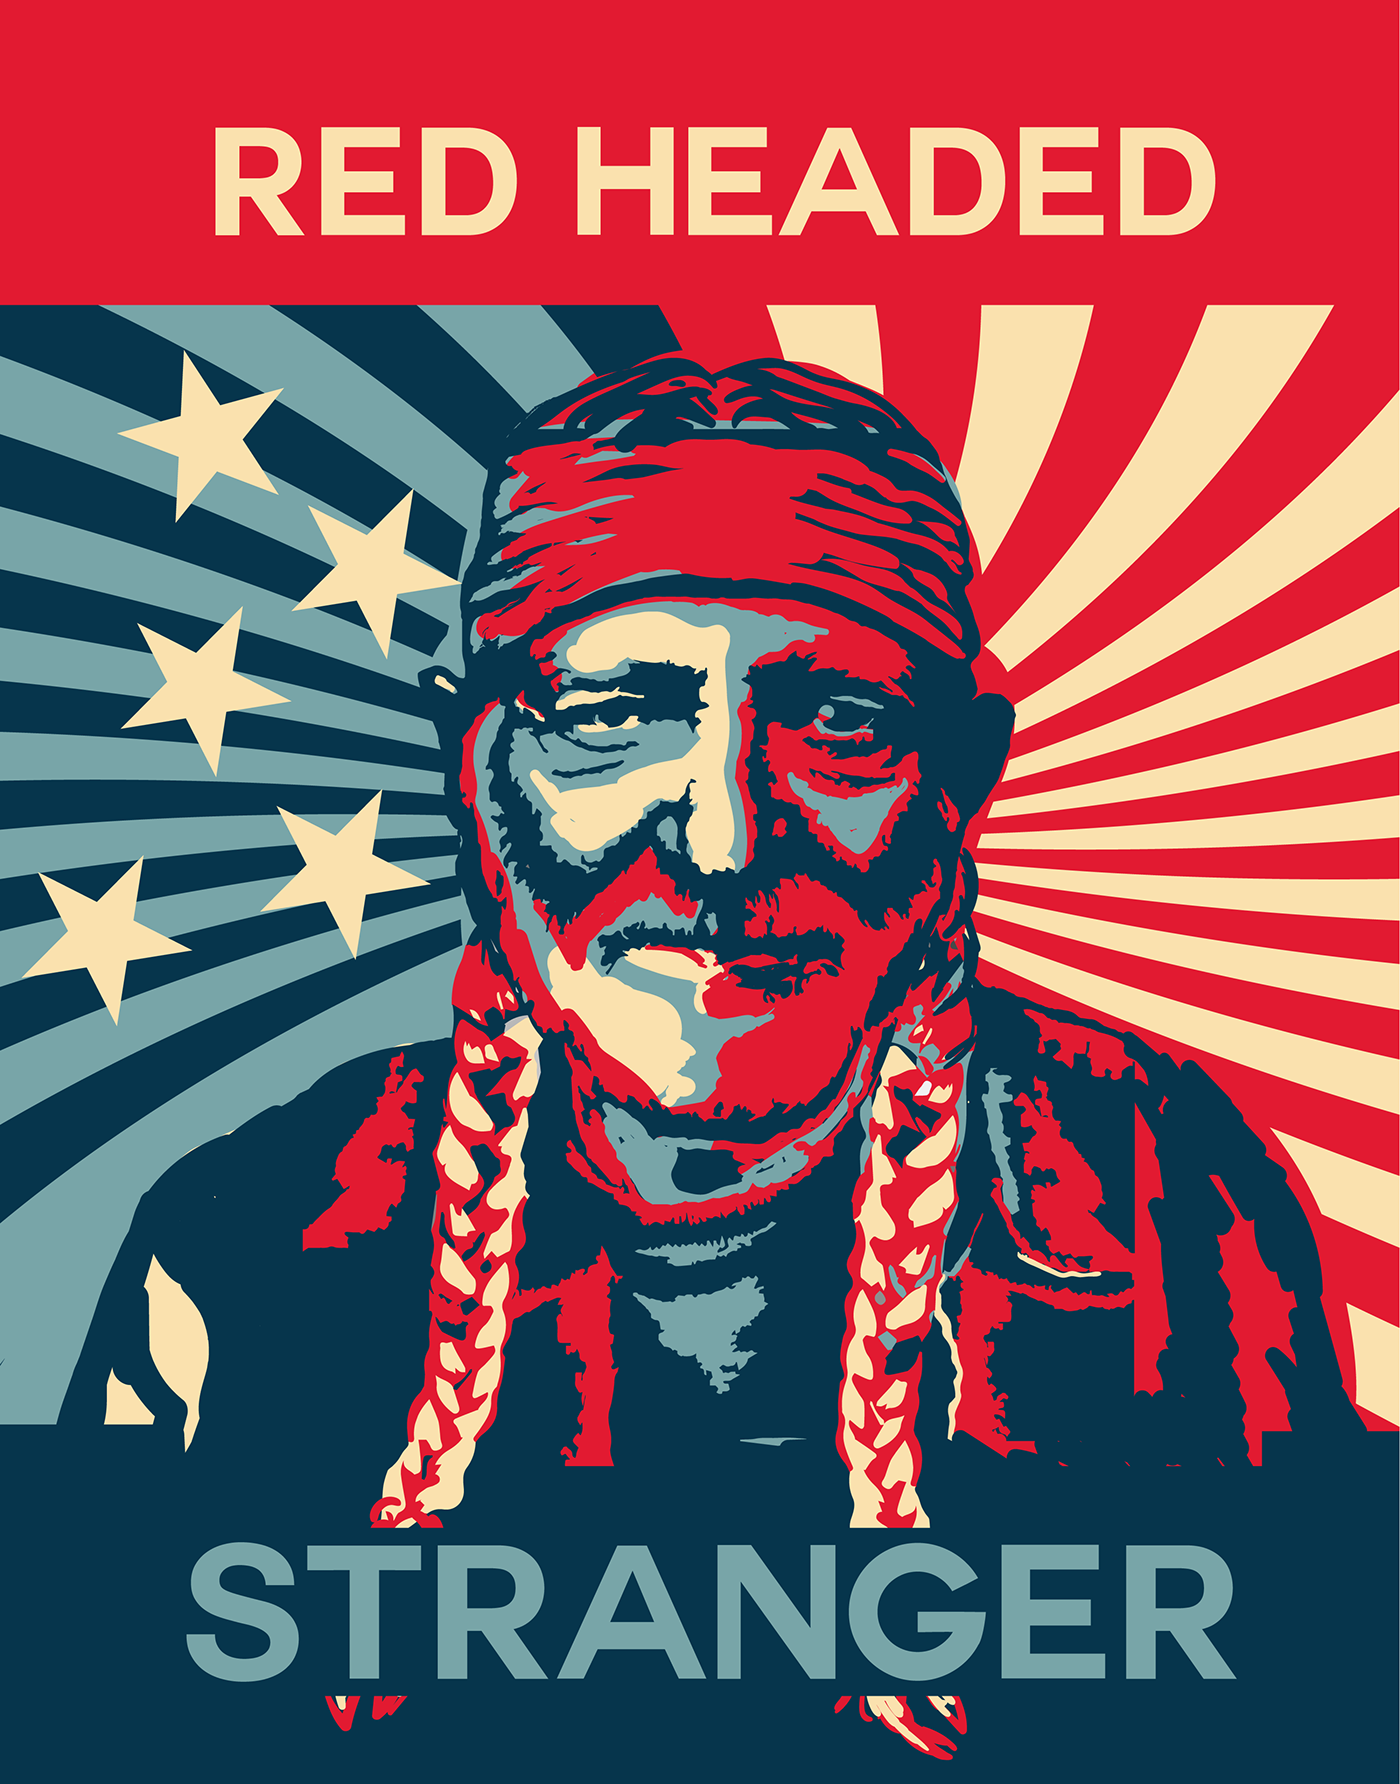 posters Red Headed Stranger willie nelson